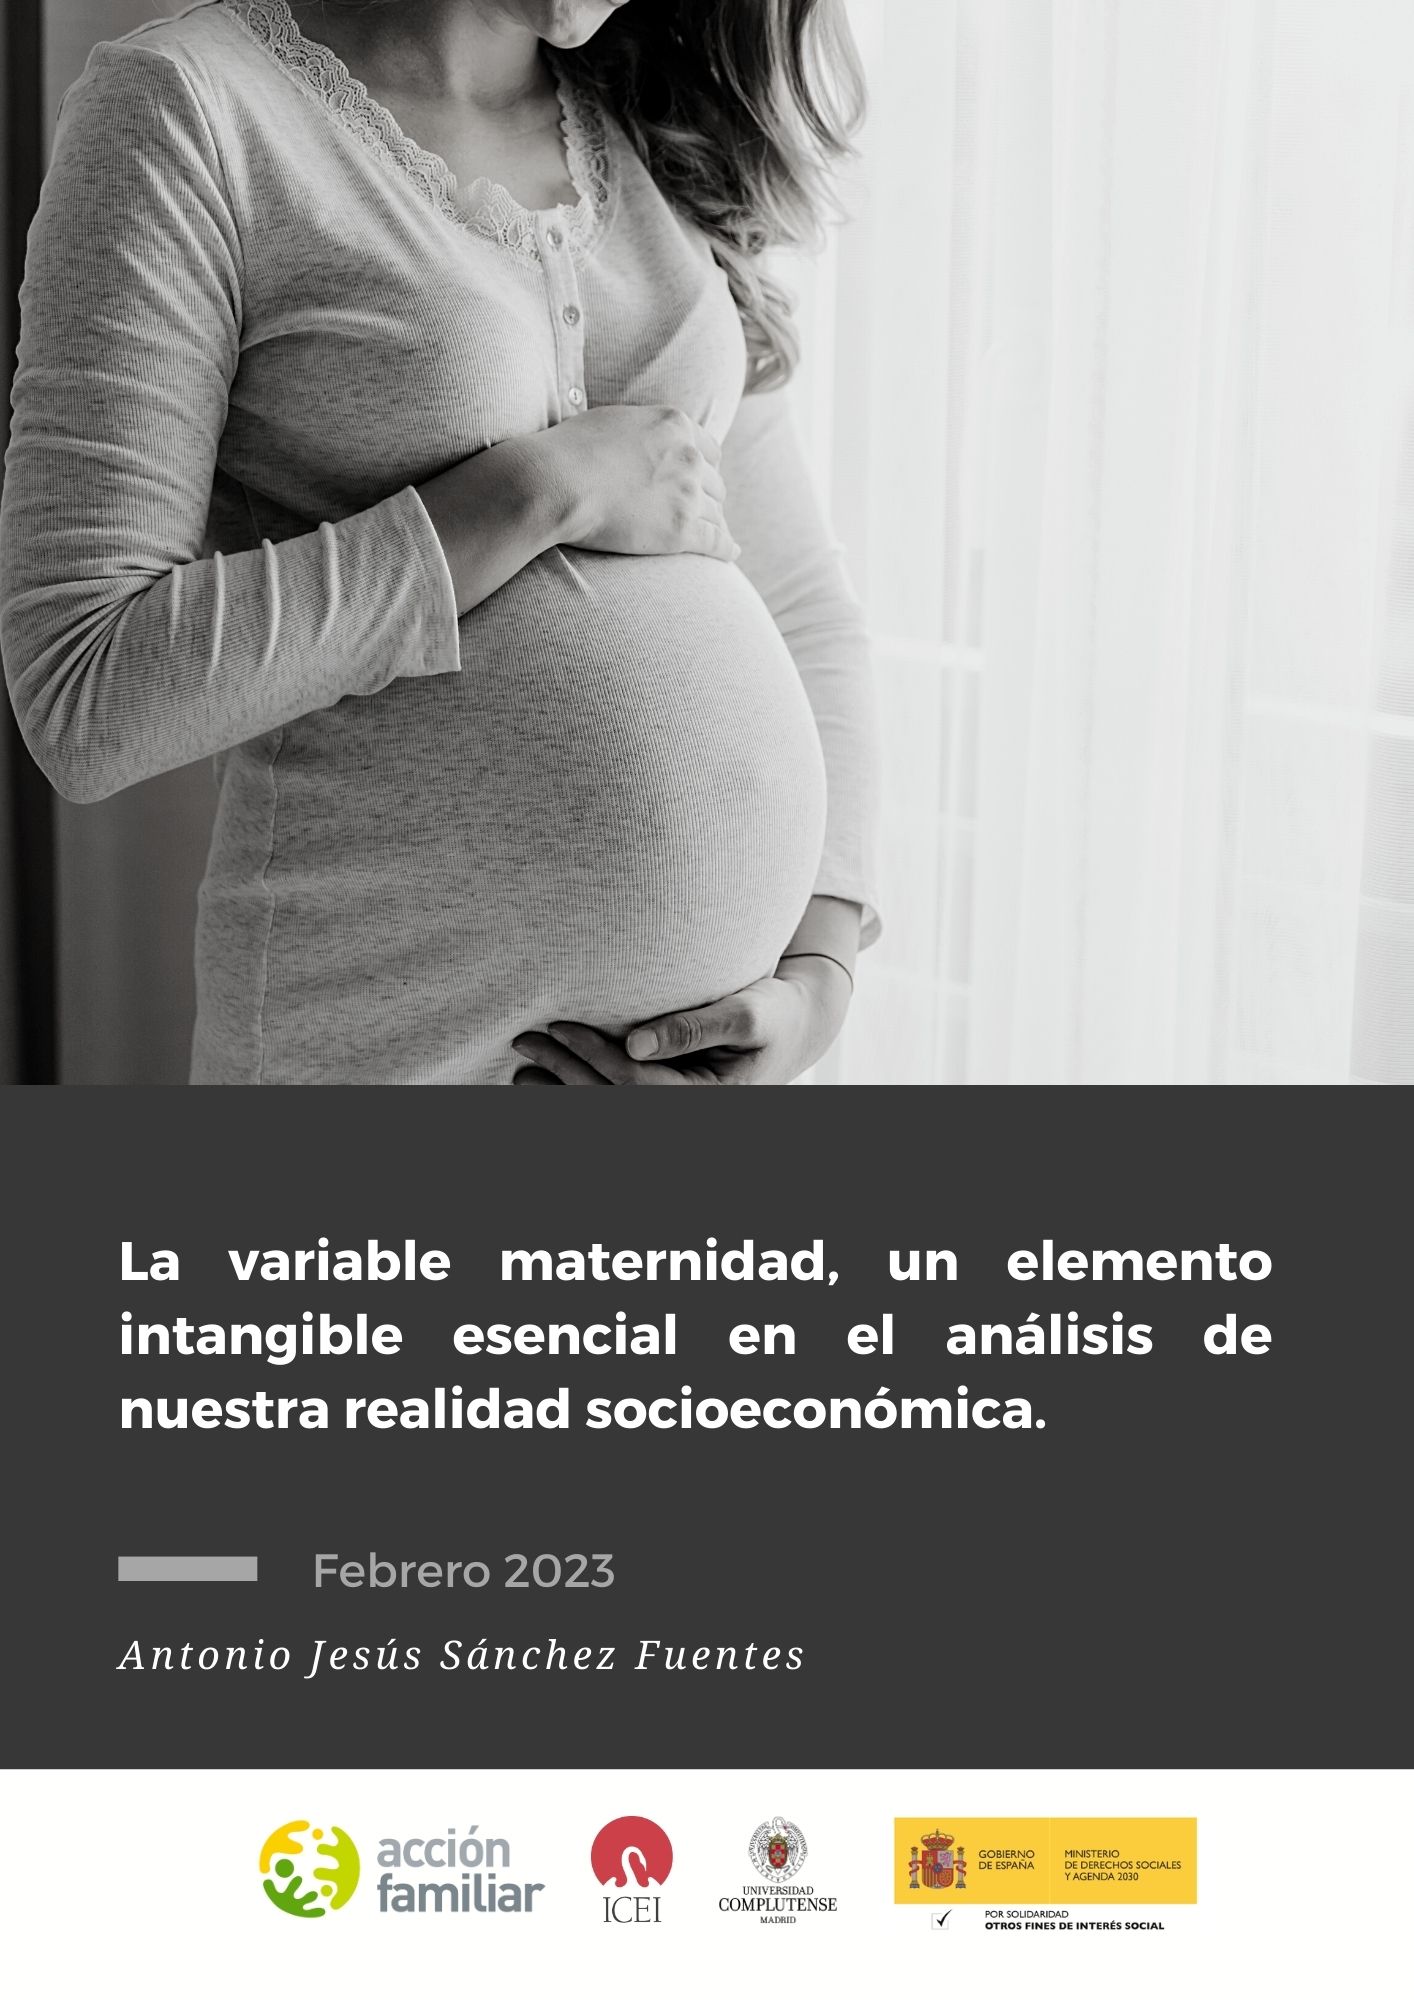 La variable maternidad, un elemento intangible esencial en el análisis de nuestra realidad socioeconómica